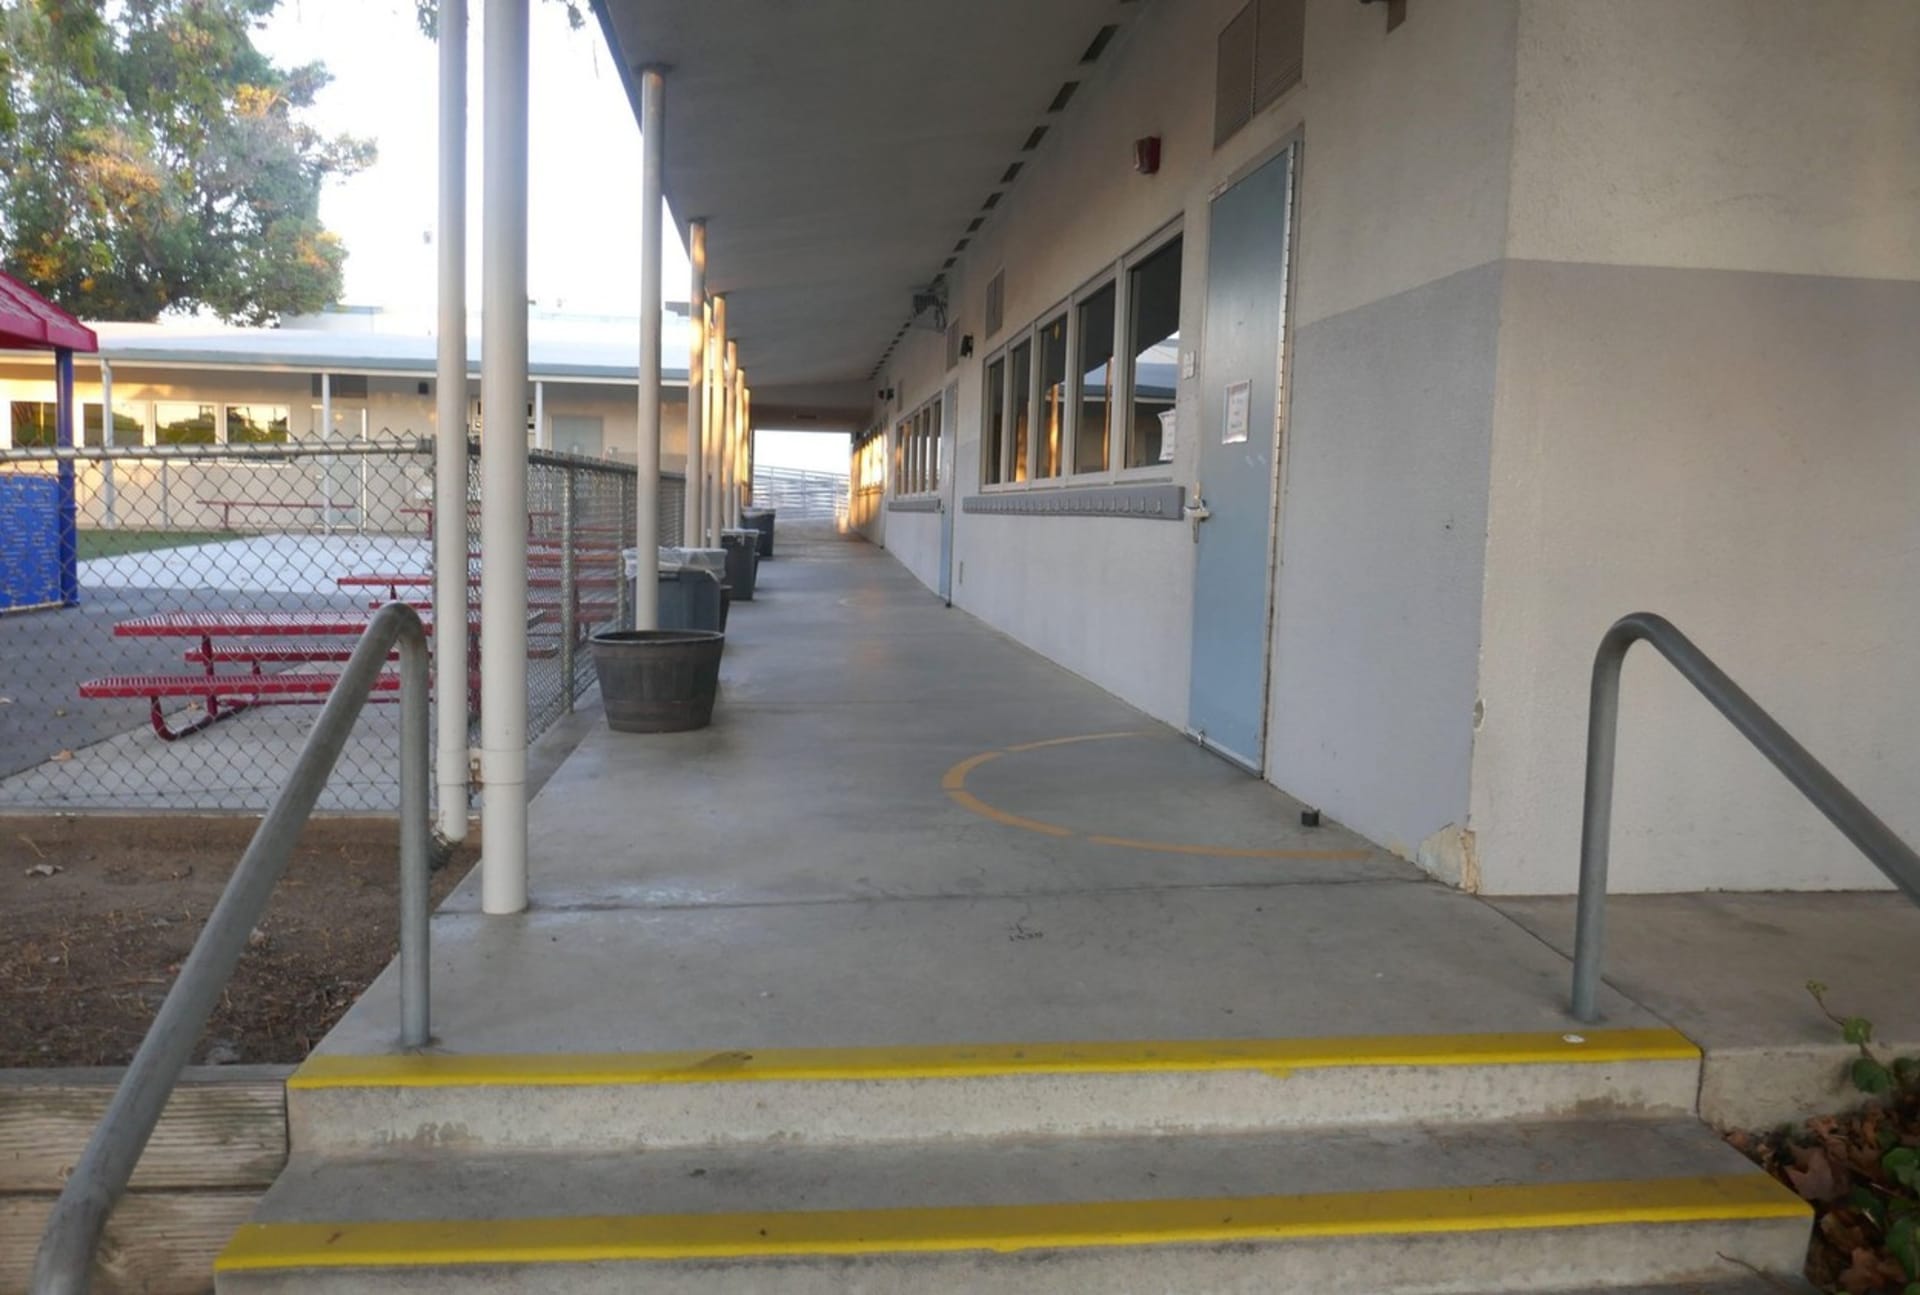 Učitele šesté třídy na základní škole v Kalifornii hospitalizovali poté, co utrpěl několik tržných ran na obličeji. (ilustrační foto)